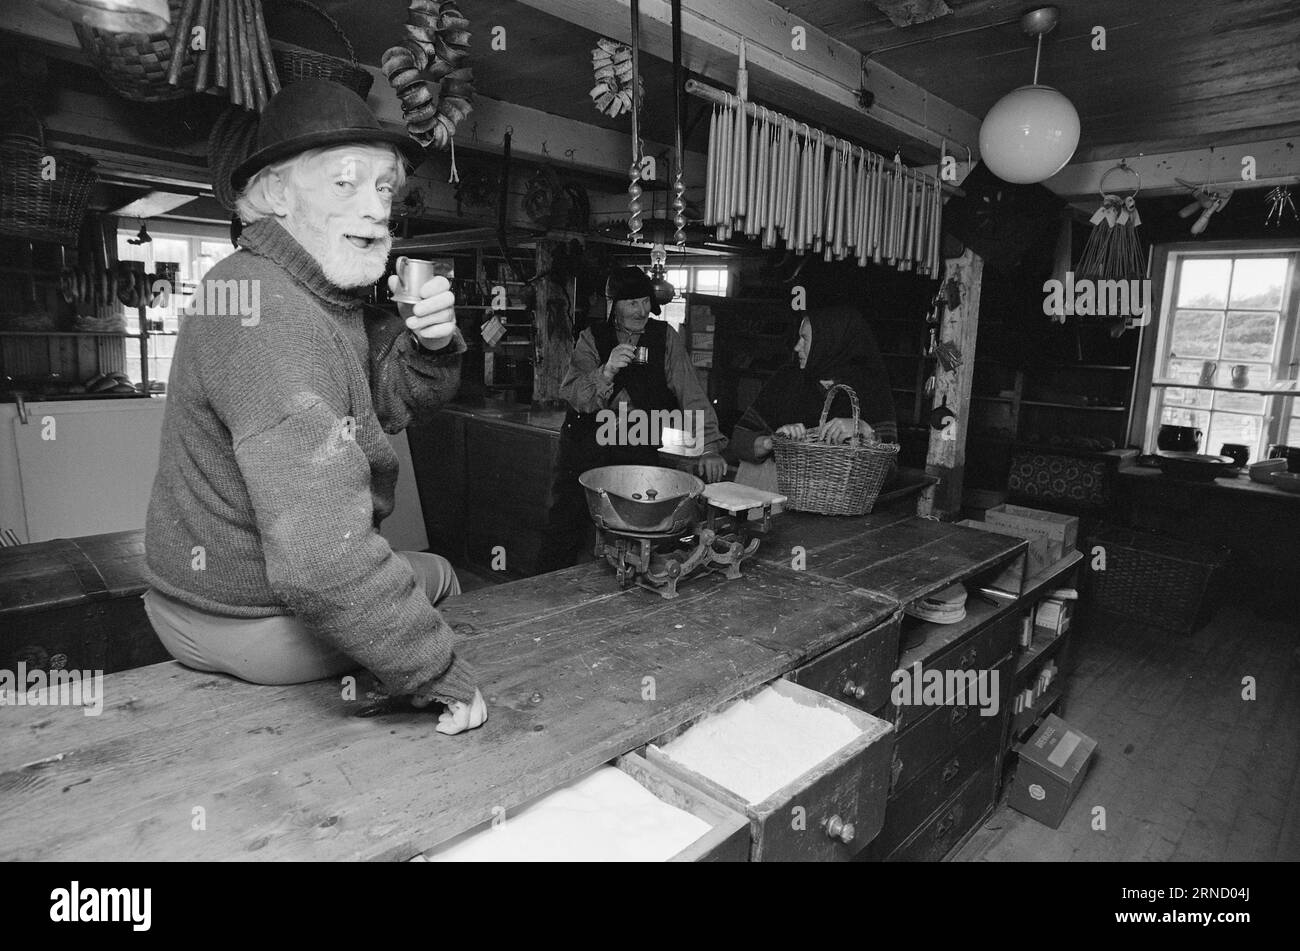 Current 41-1-1973: Three Years with HamsunIl teatro televisivo sta girando la serie Hamsun 'Benoni and Rosa' presso il vecchio trading post di Kjerringøy fuori Bodø nel Nordland. E' un compito enorme per loro, e la serie non sarà vista sullo schermo televisivo fino all'autunno del 1975. Nella vecchia krambua, oltre a zucchero e caffè e lampade a olio di fegato di merluzzo, si poteva anche prendere un mezzo pægl, un DRAM. L'attore Dan fosse e il pescatore Aksel Pedersen ne hanno prosciugato uno buono dal barile. Foto: Aage Storløkken / Aktuell / NTB ***FOTO NON ELABORATA*** questo testo è stato automatico Foto Stock